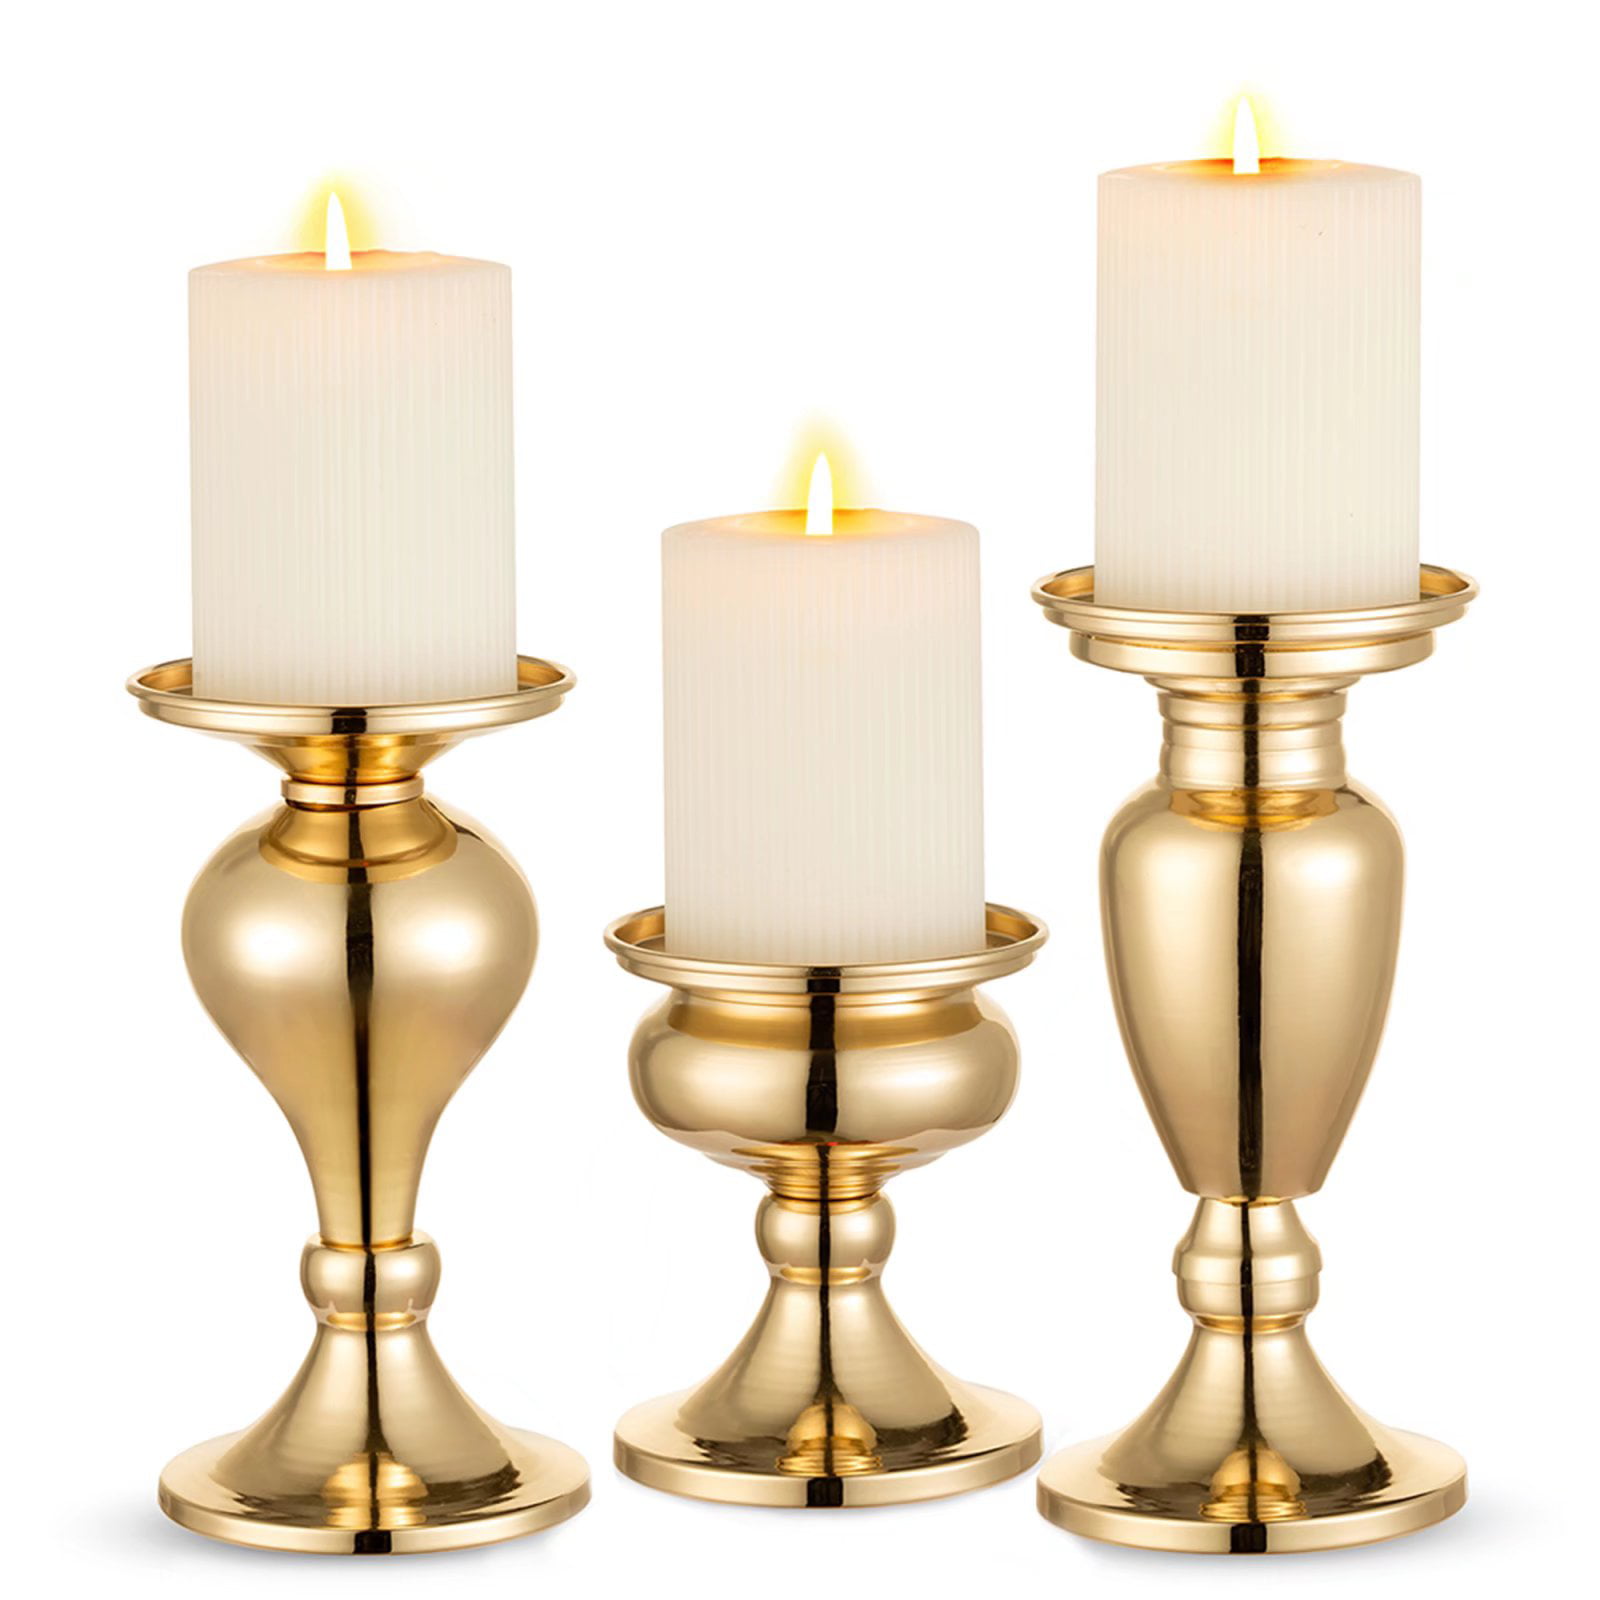 Details about   Candle Holder Flower Base Elegant Design Metal Sturdy for Wedding Decoration 